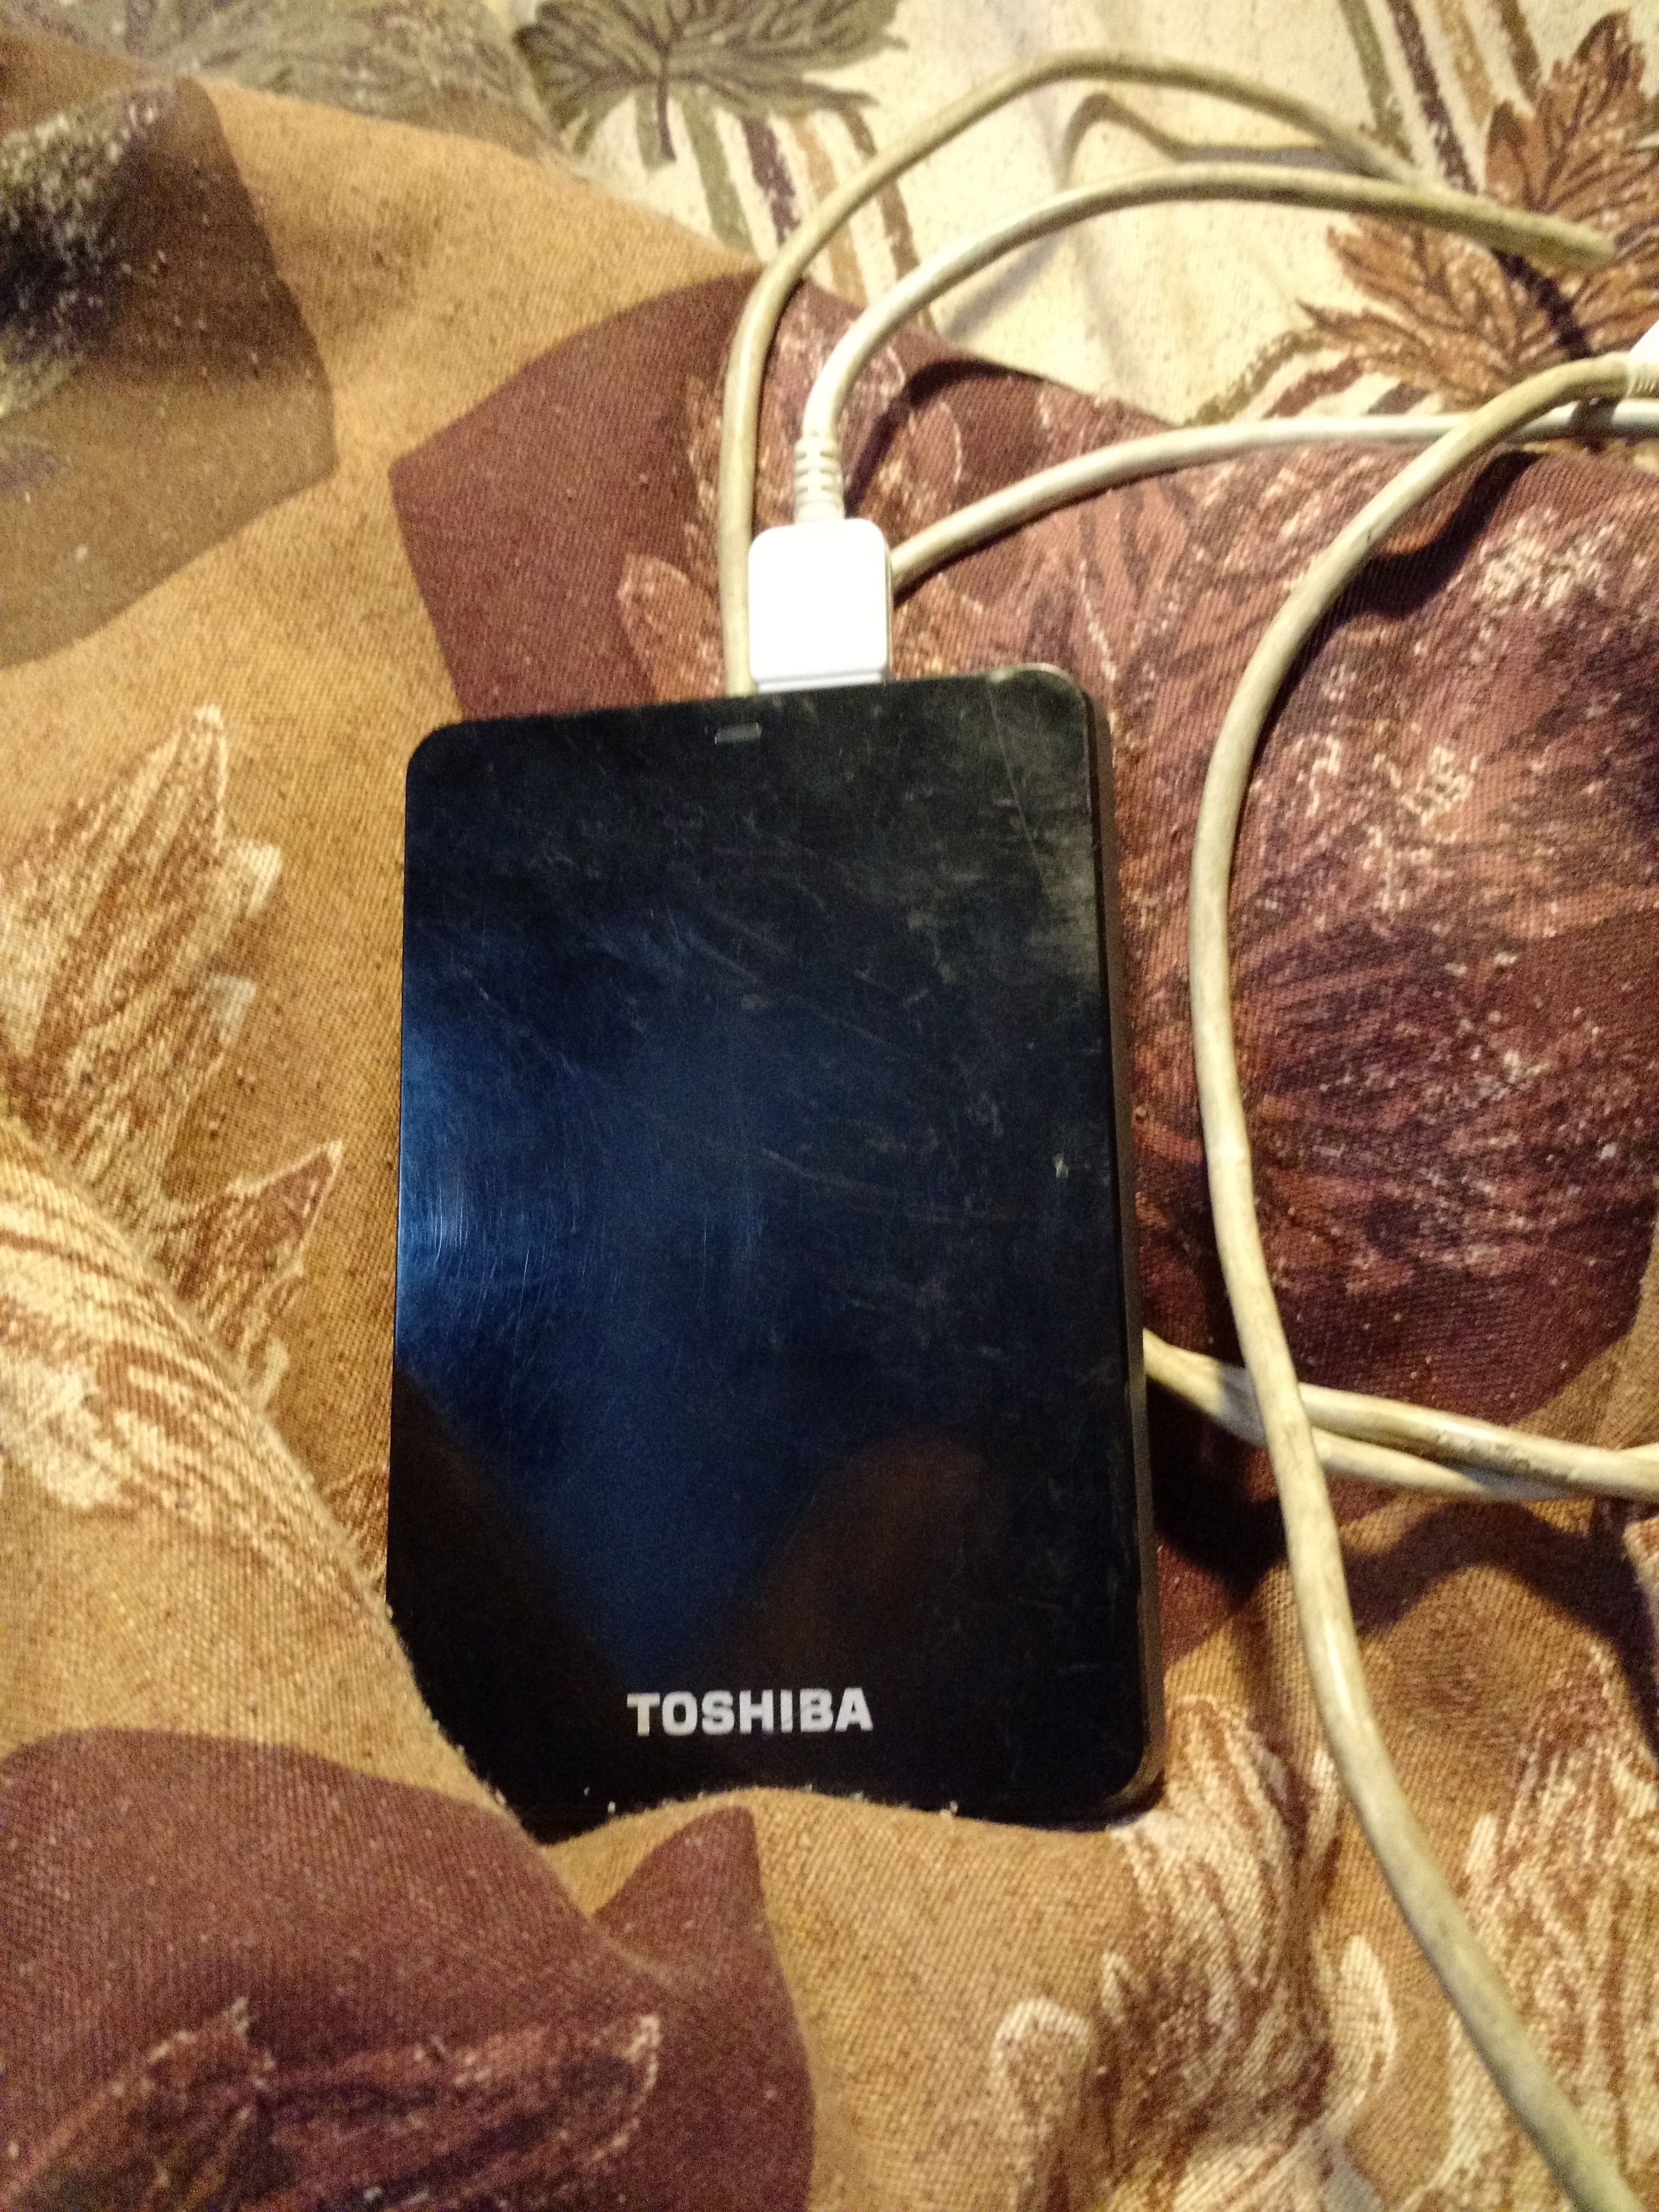 Toshiba hard drive 500g